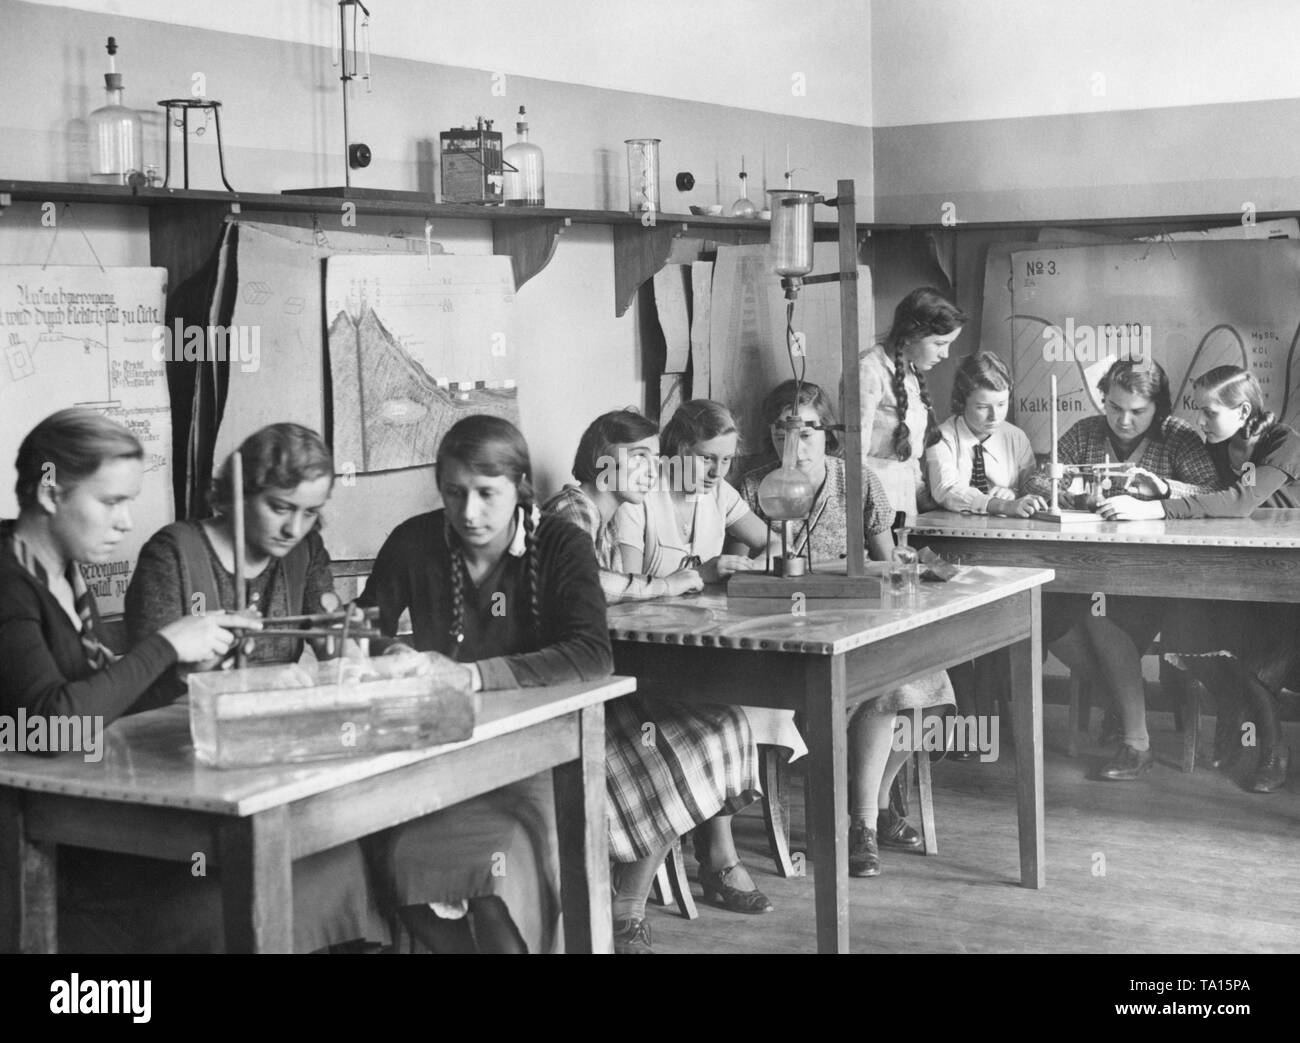 Cercare in una classe durante una classe di fisica a una ragazza della scuola secondaria in Neukoelln. La foto è stata scattata in occasione del XXV anniversario della scuola, probabilmente nel 1932. Foto Stock